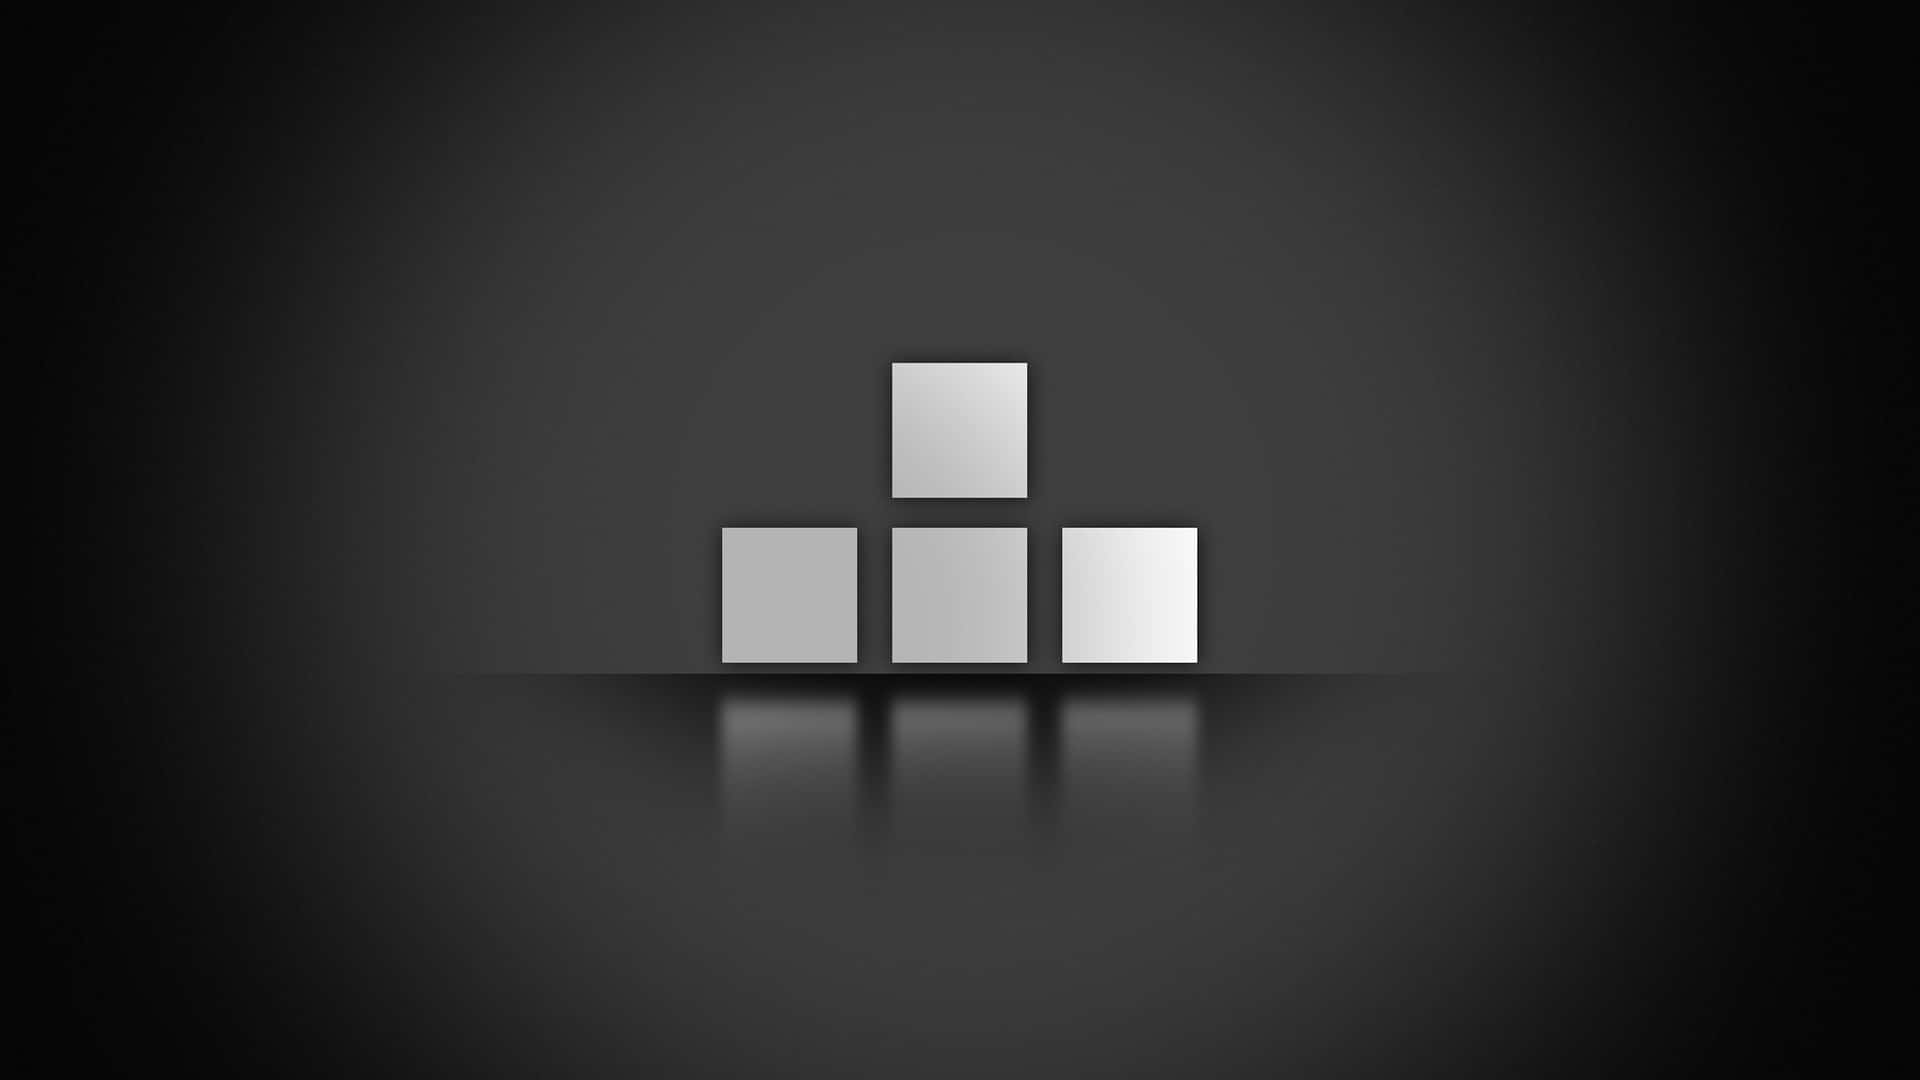 Classic Tetris Blocks Falling